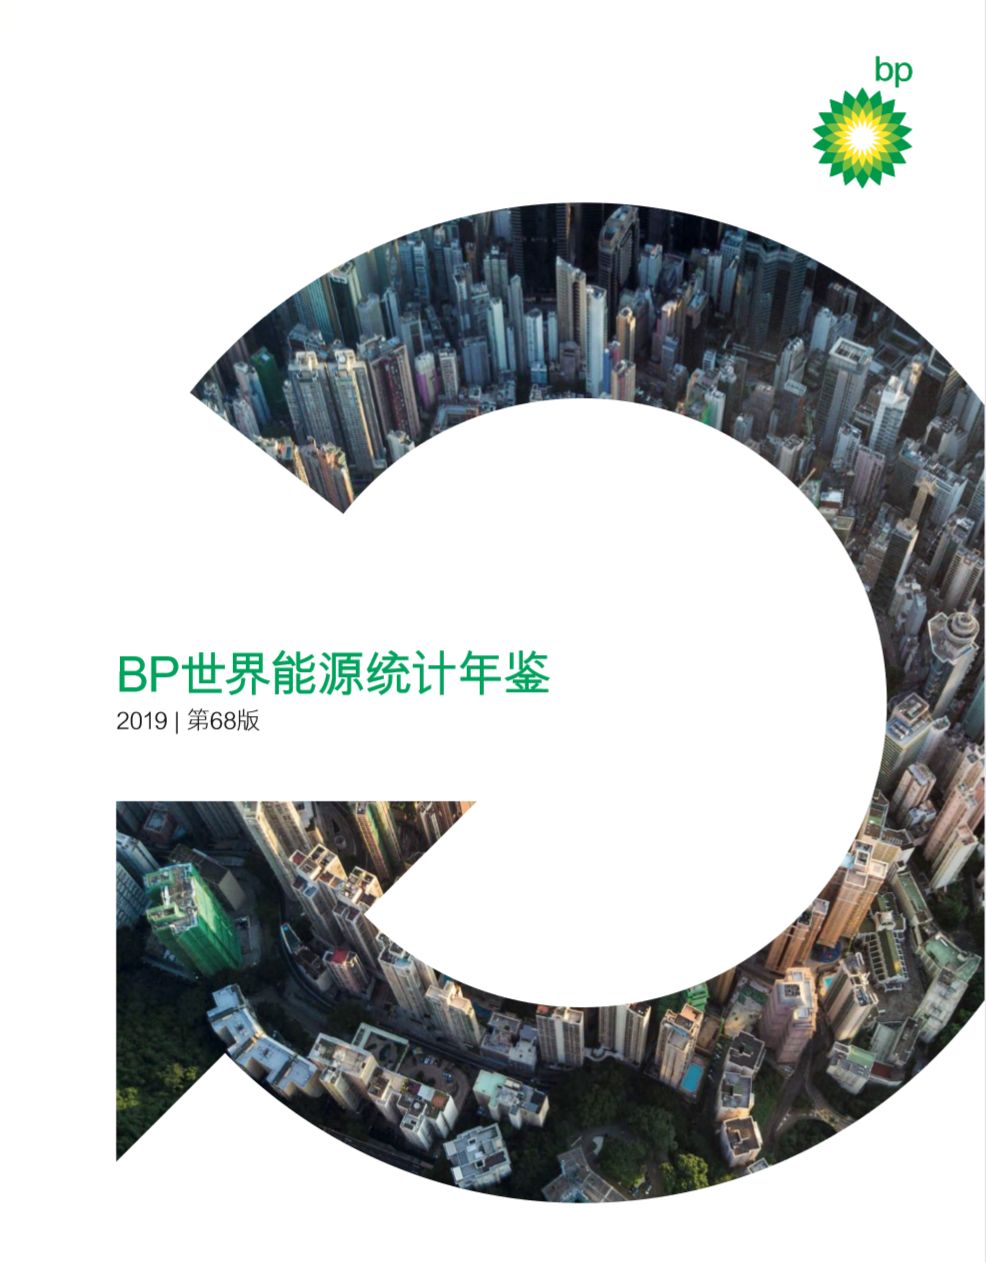 宝博:报告BP世界能源统计年鉴2019中文版解读：中国石油对外依存度72天